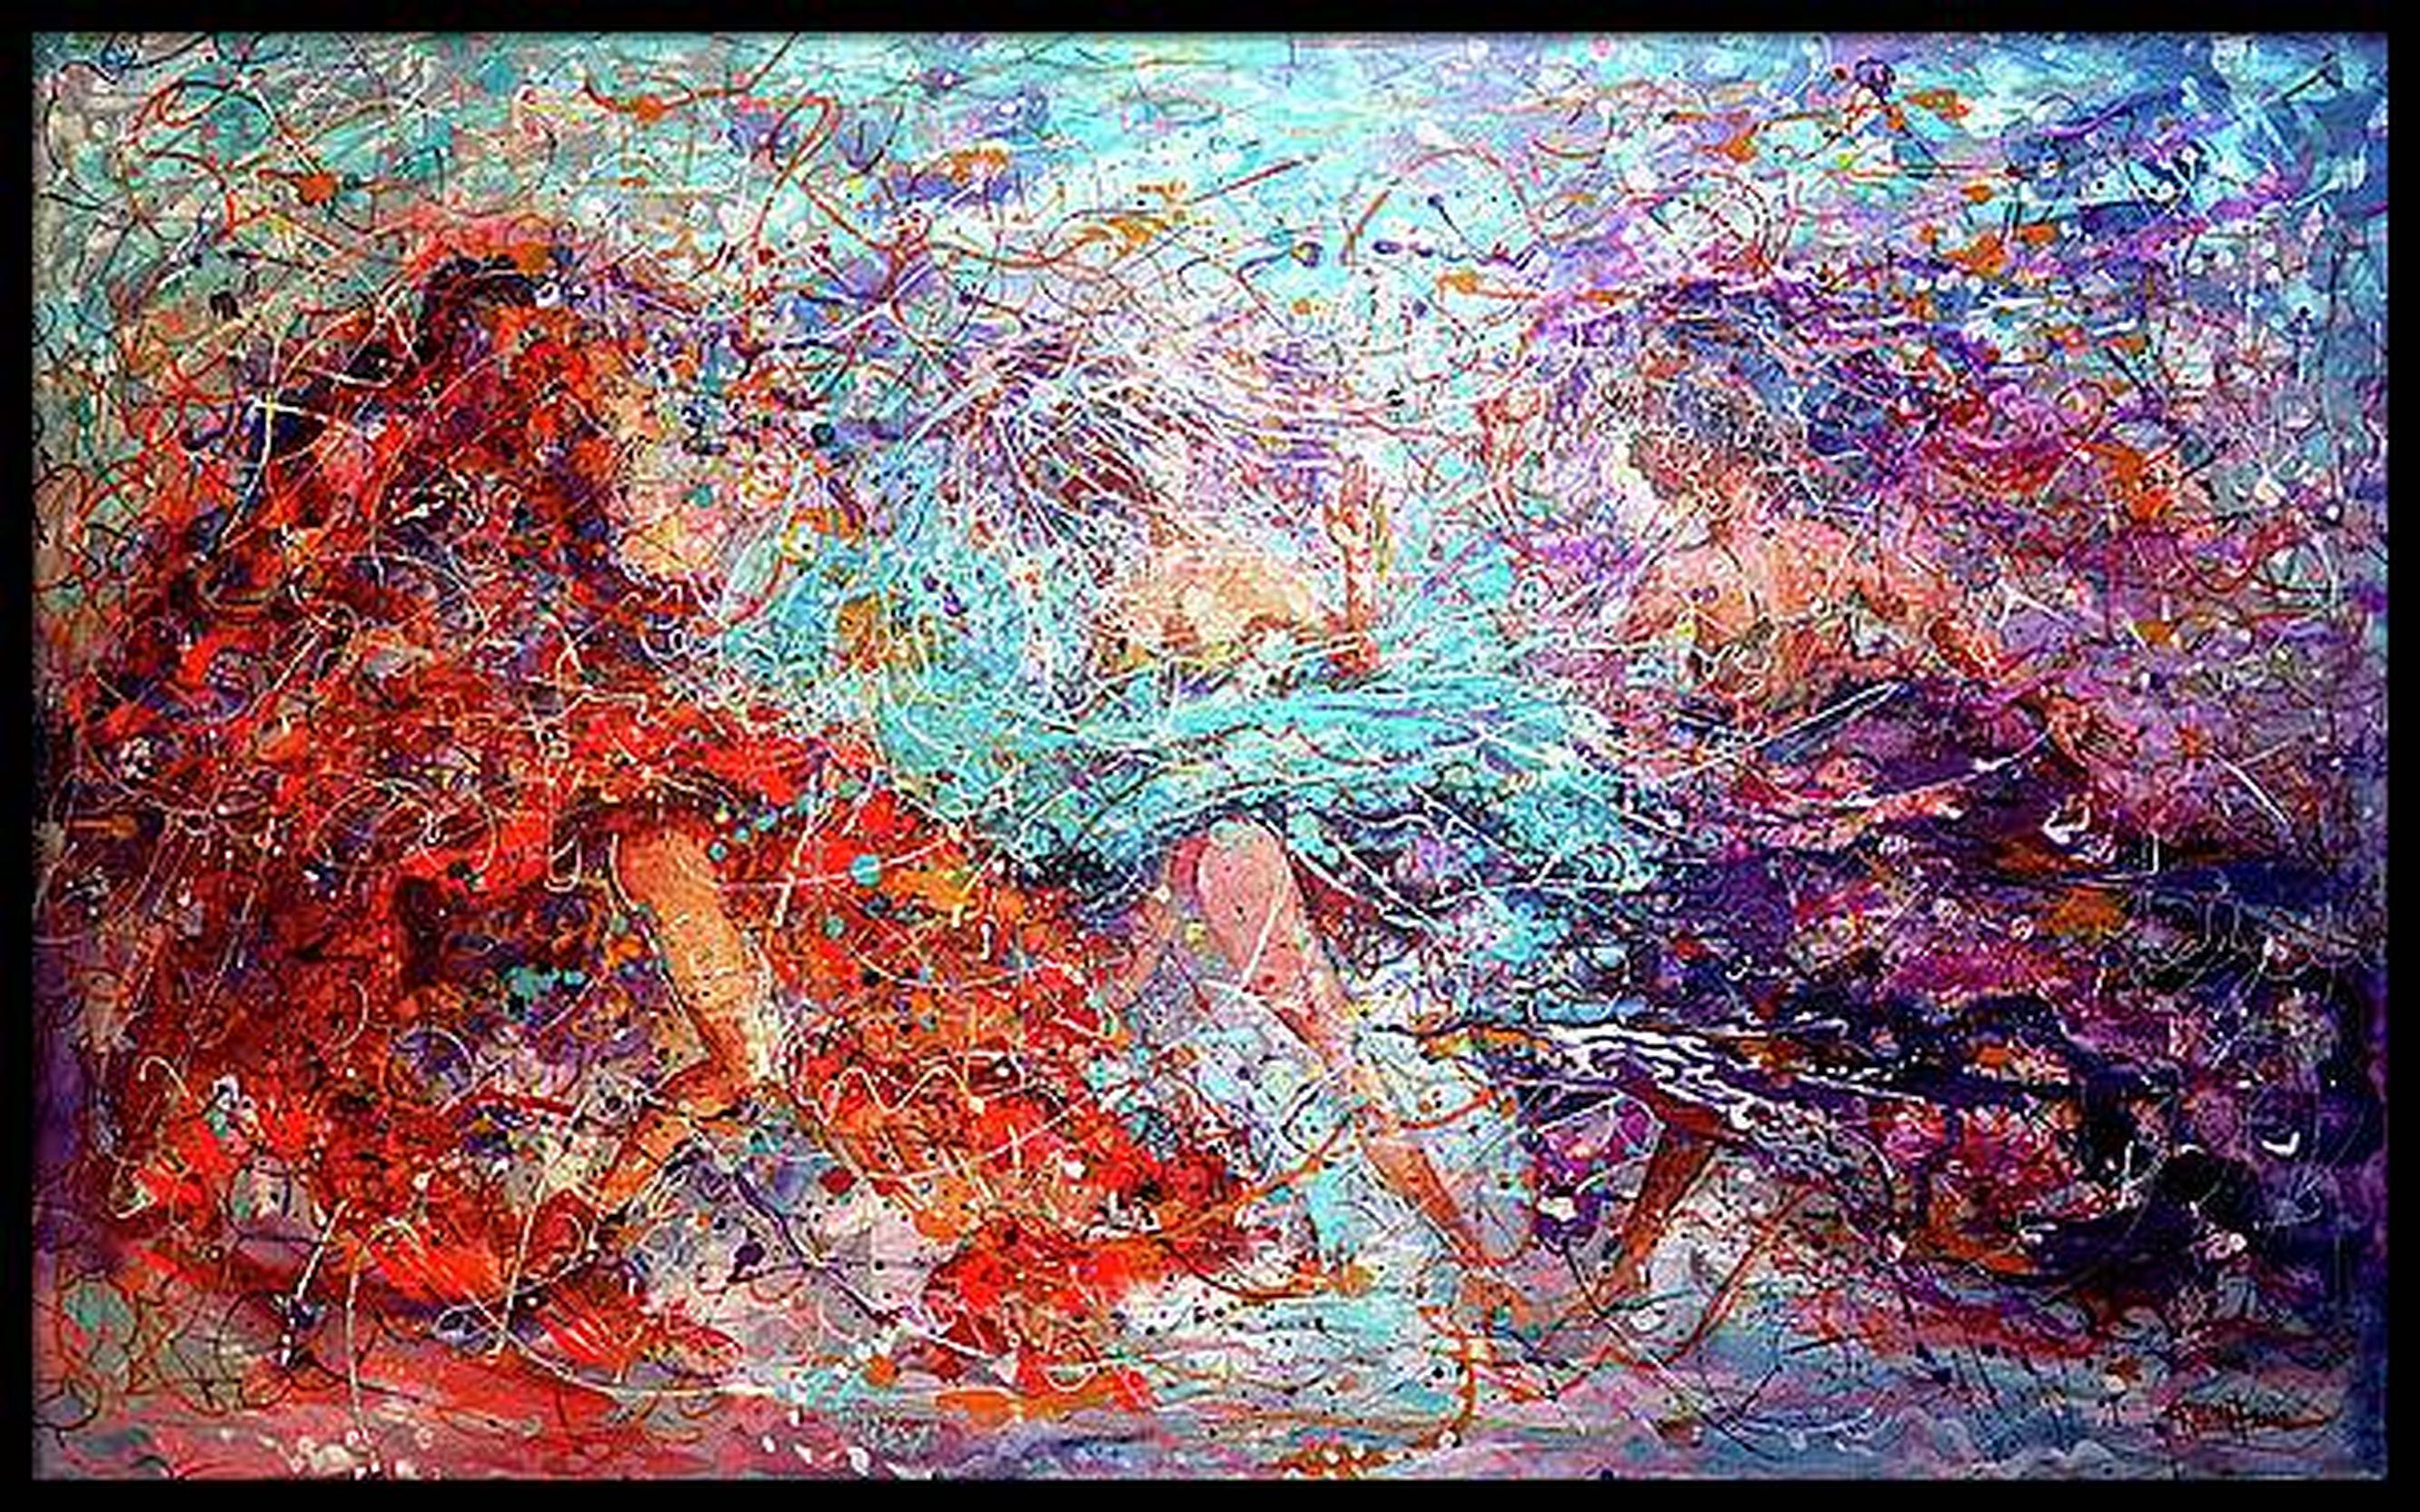 Hot Dance - Impressionist Painting by RAKHMET REDZHEPOV (RAMZI)